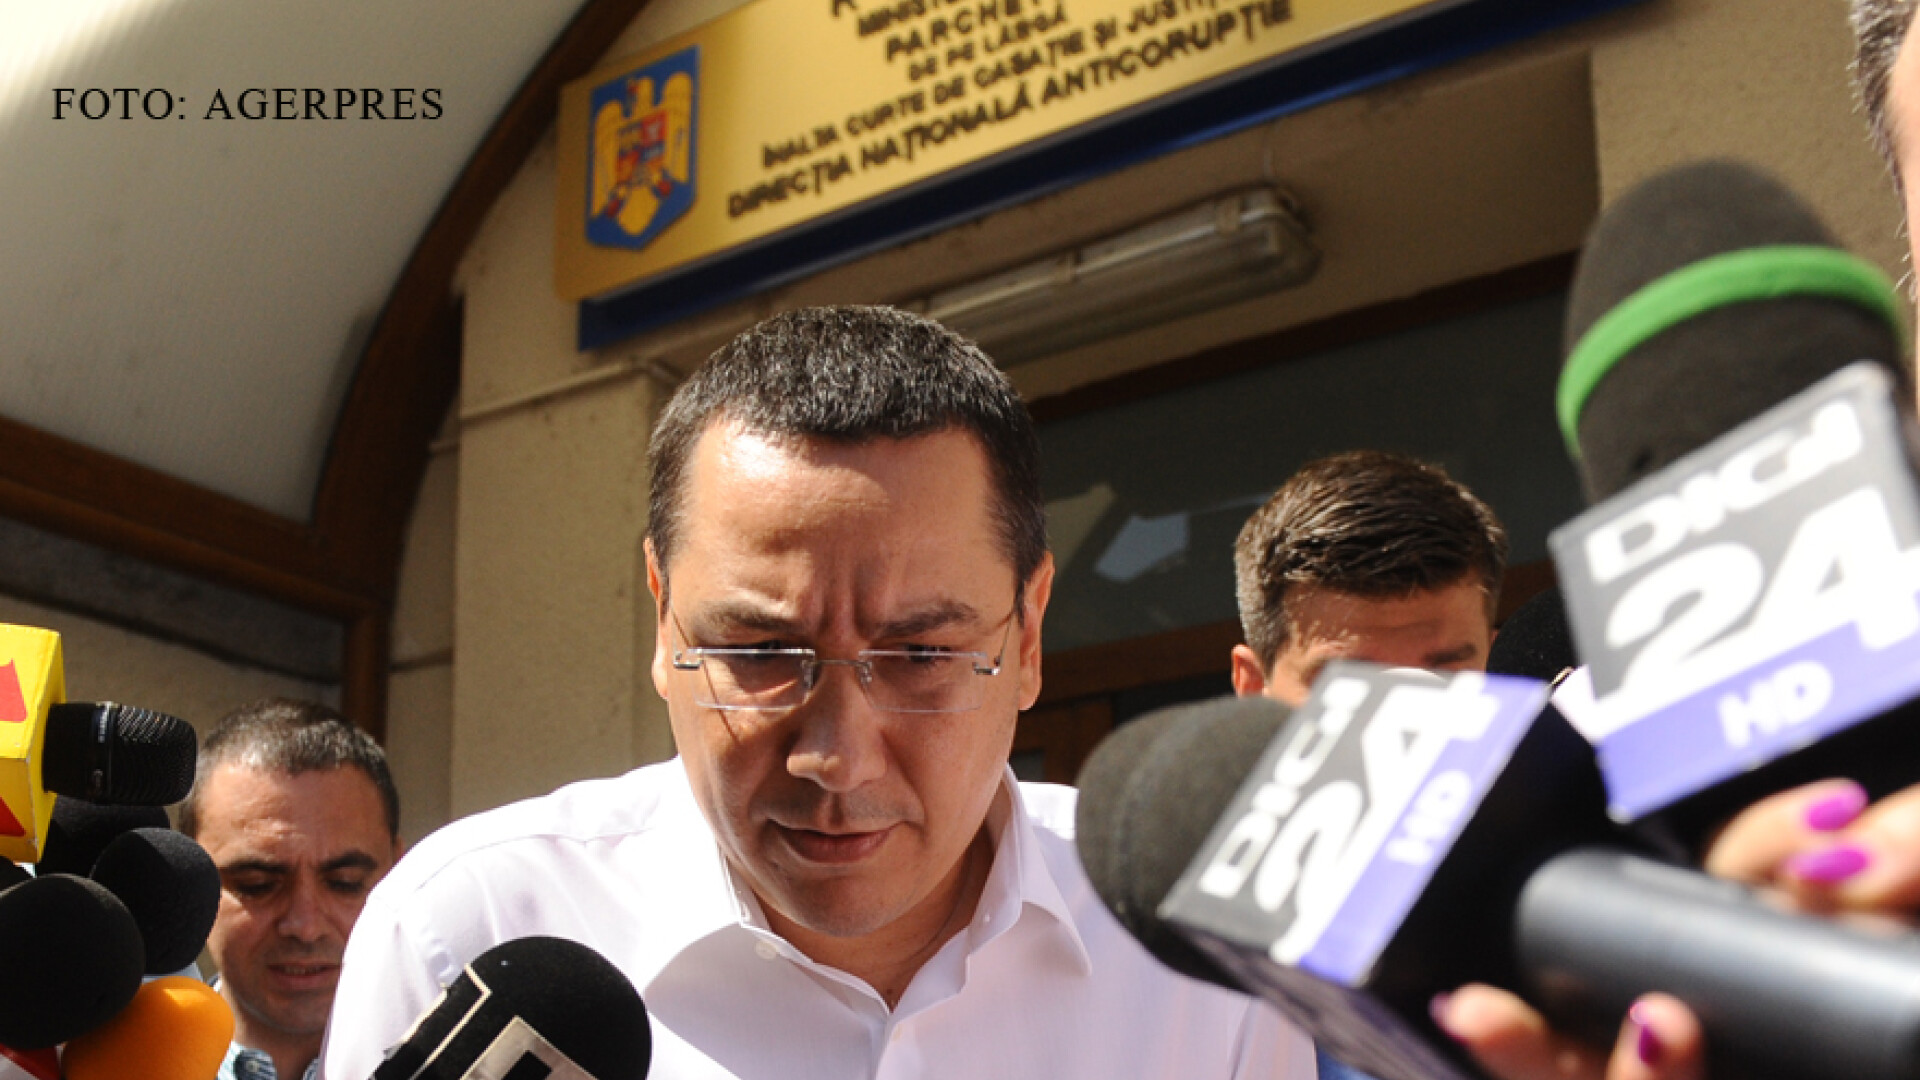 Premierul Victor Ponta pleaca de la sediul Directiei Nationale Anticoruptie, unde a fost citat de procurori pentru audieri.